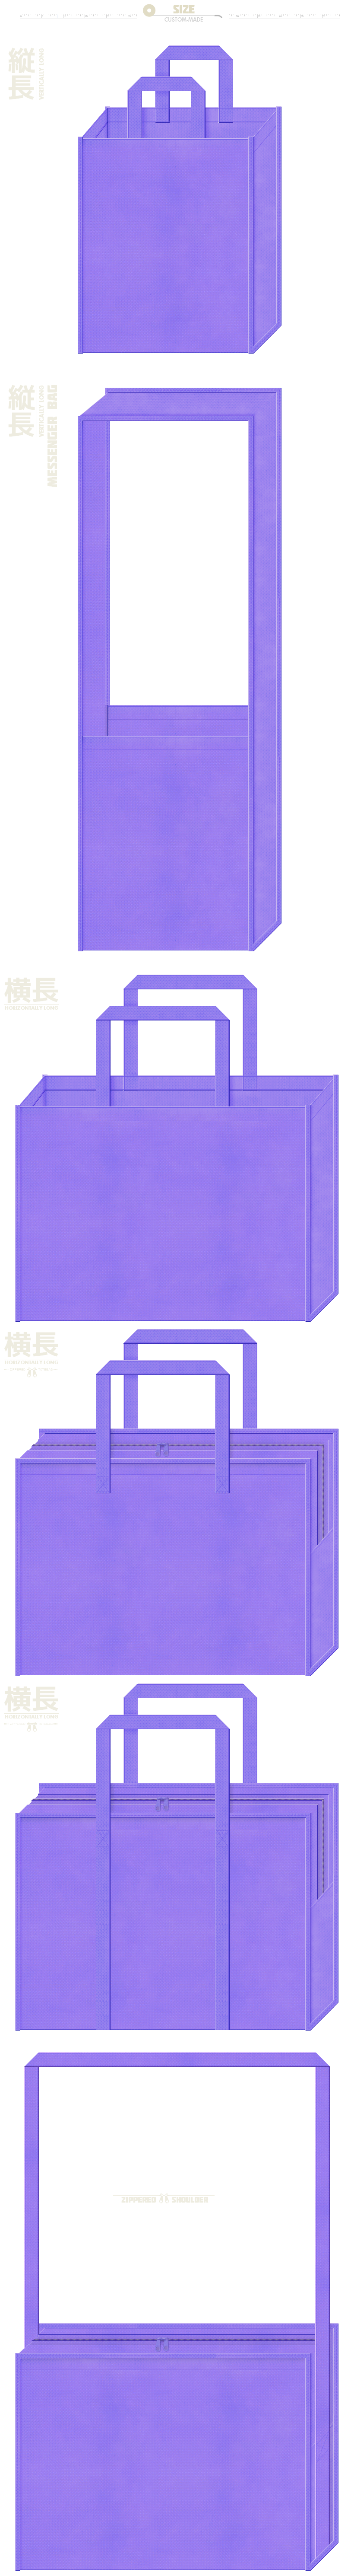 薄紫色の不織布バッグ6種